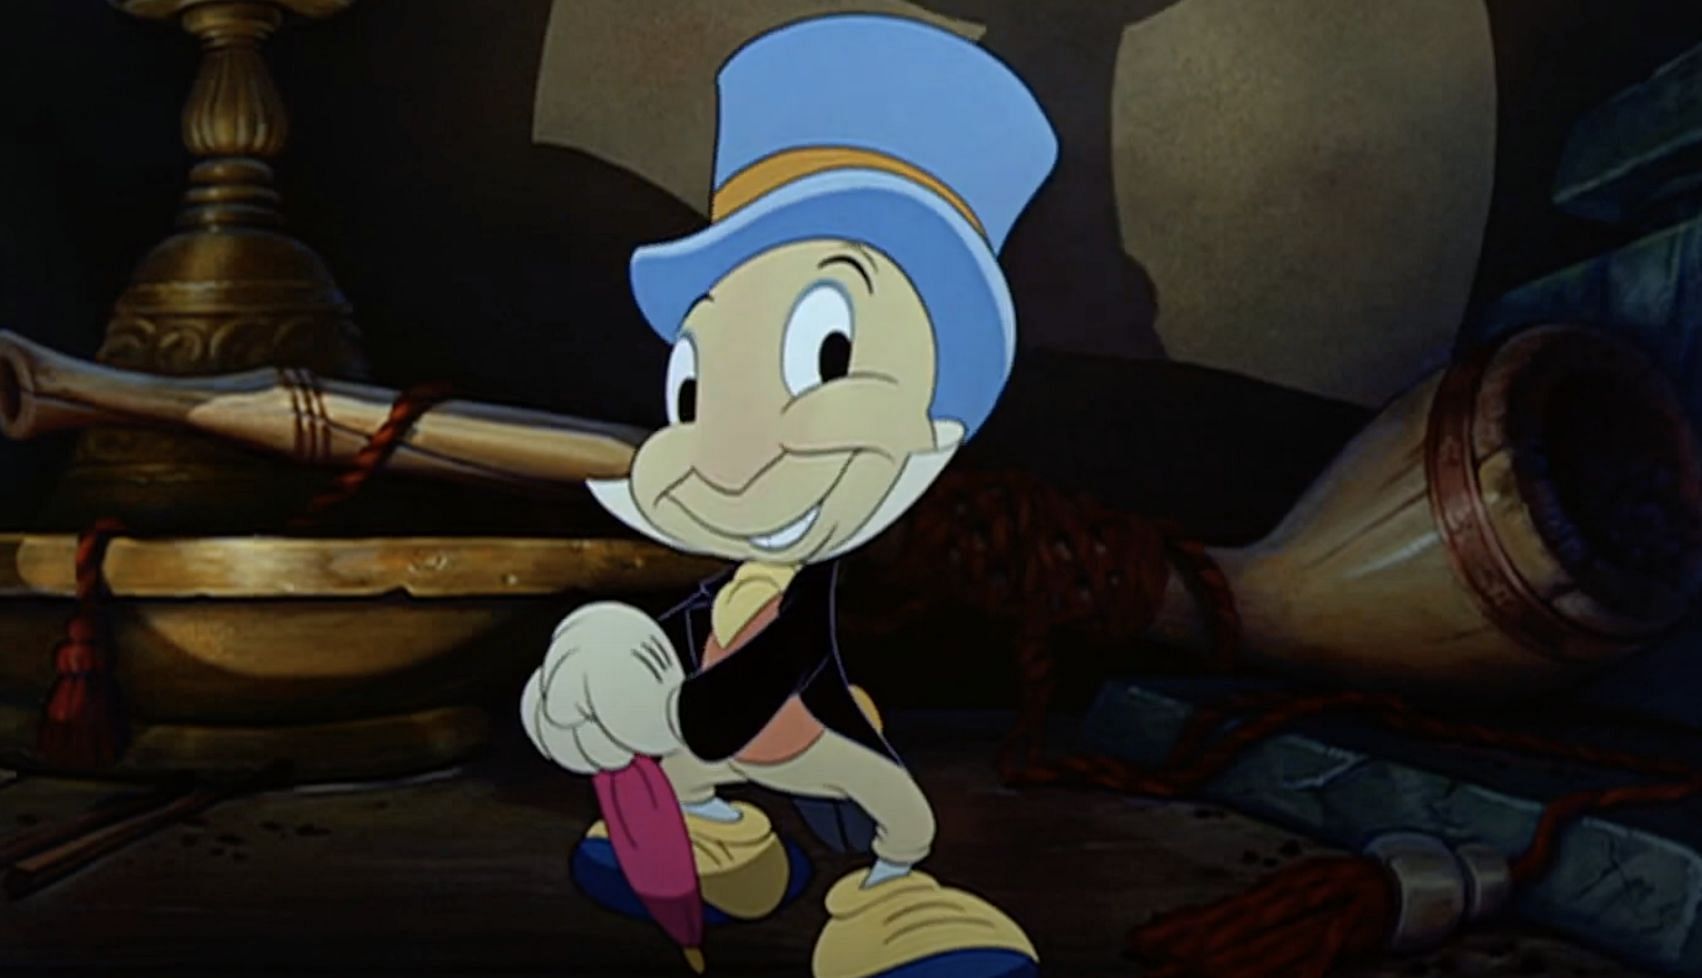 Jiminy Cricket in the film (Image via Disney)